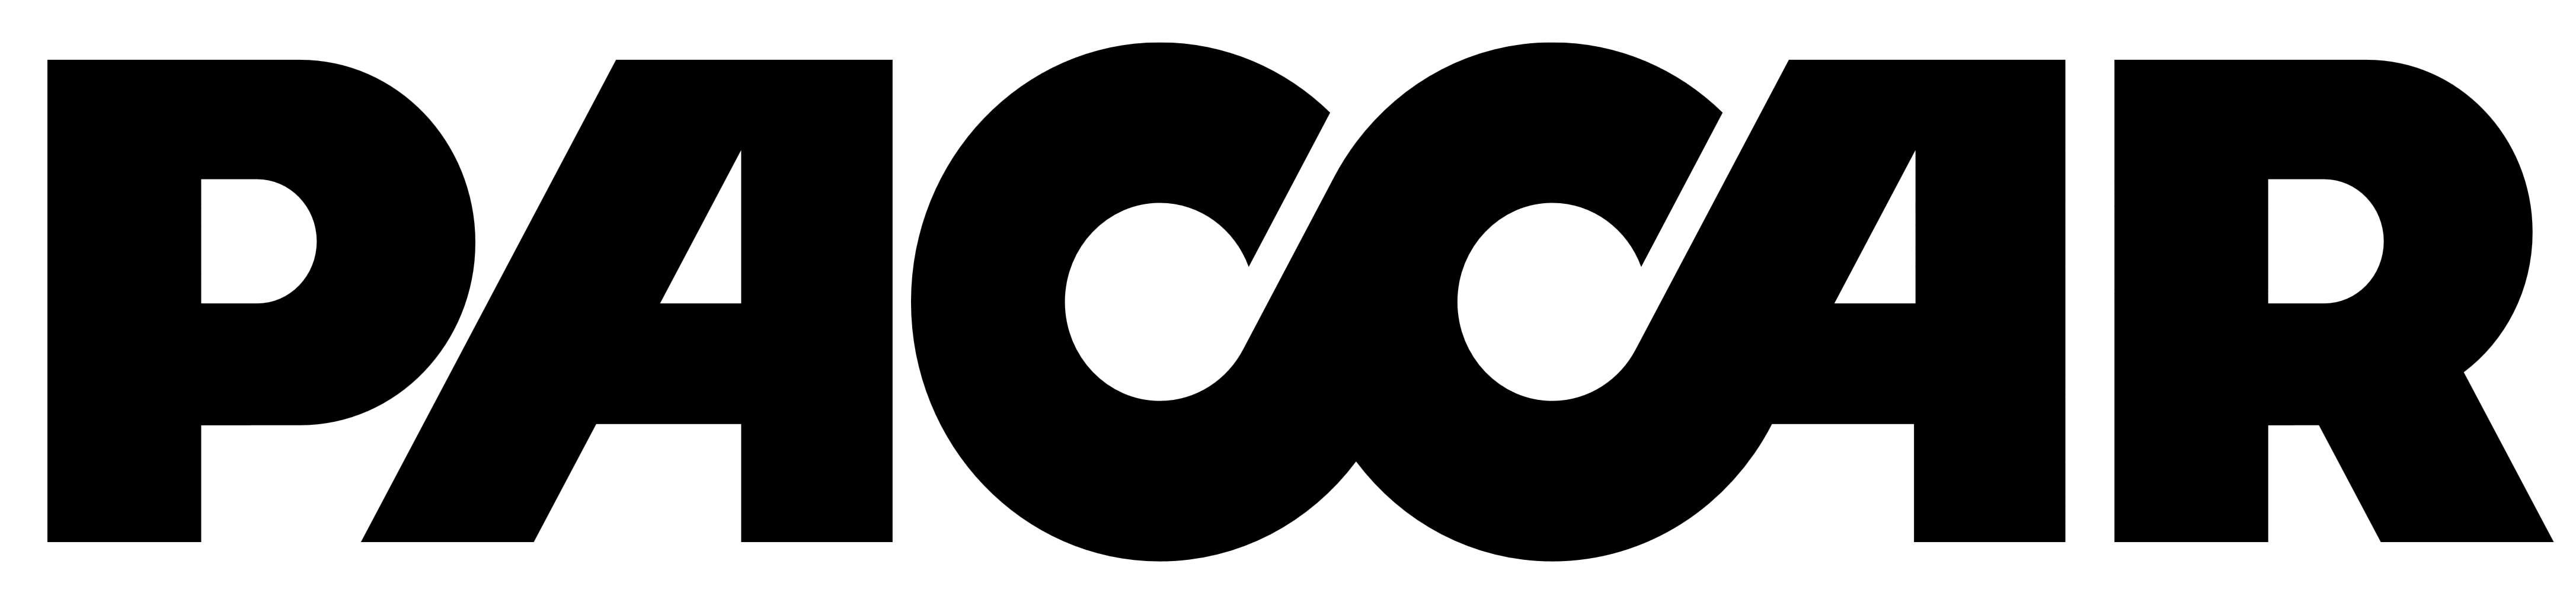 Paccar logo, logotype